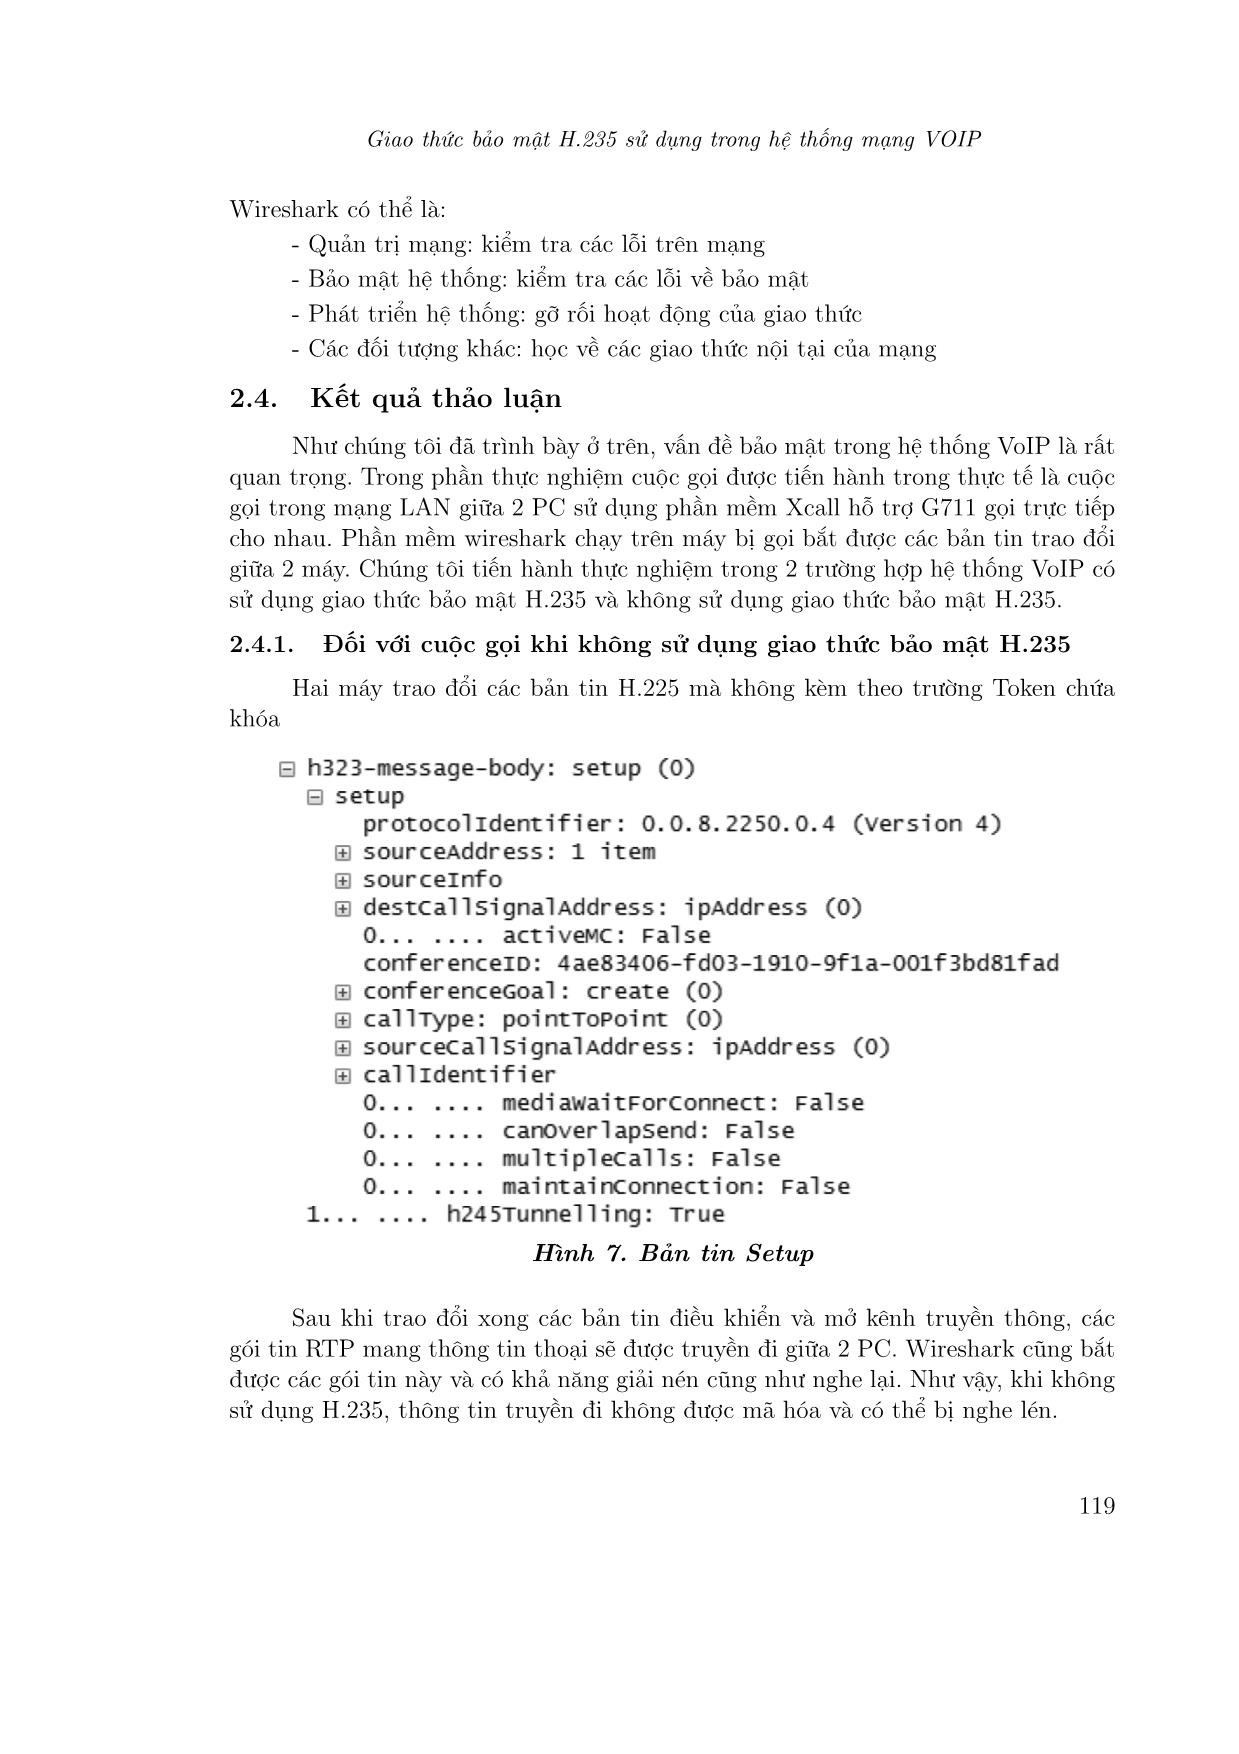 Giao thức bảo mật H.235 sử dụng trong hệ thống mạng voip trang 8